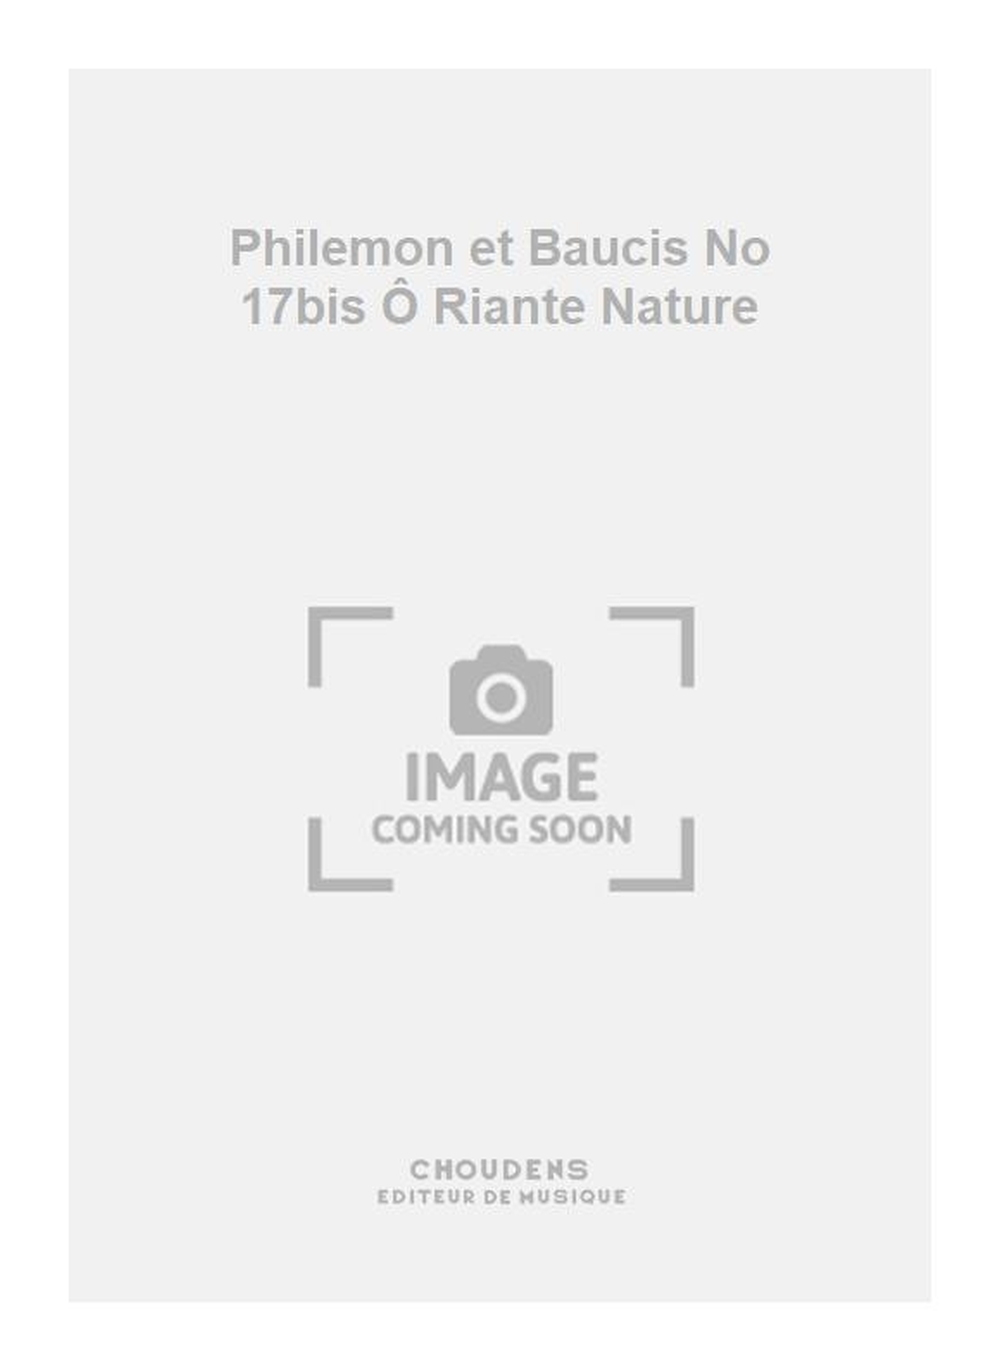 Charles Gounod: Philemon et Baucis No 17bis Ô Riante Nature